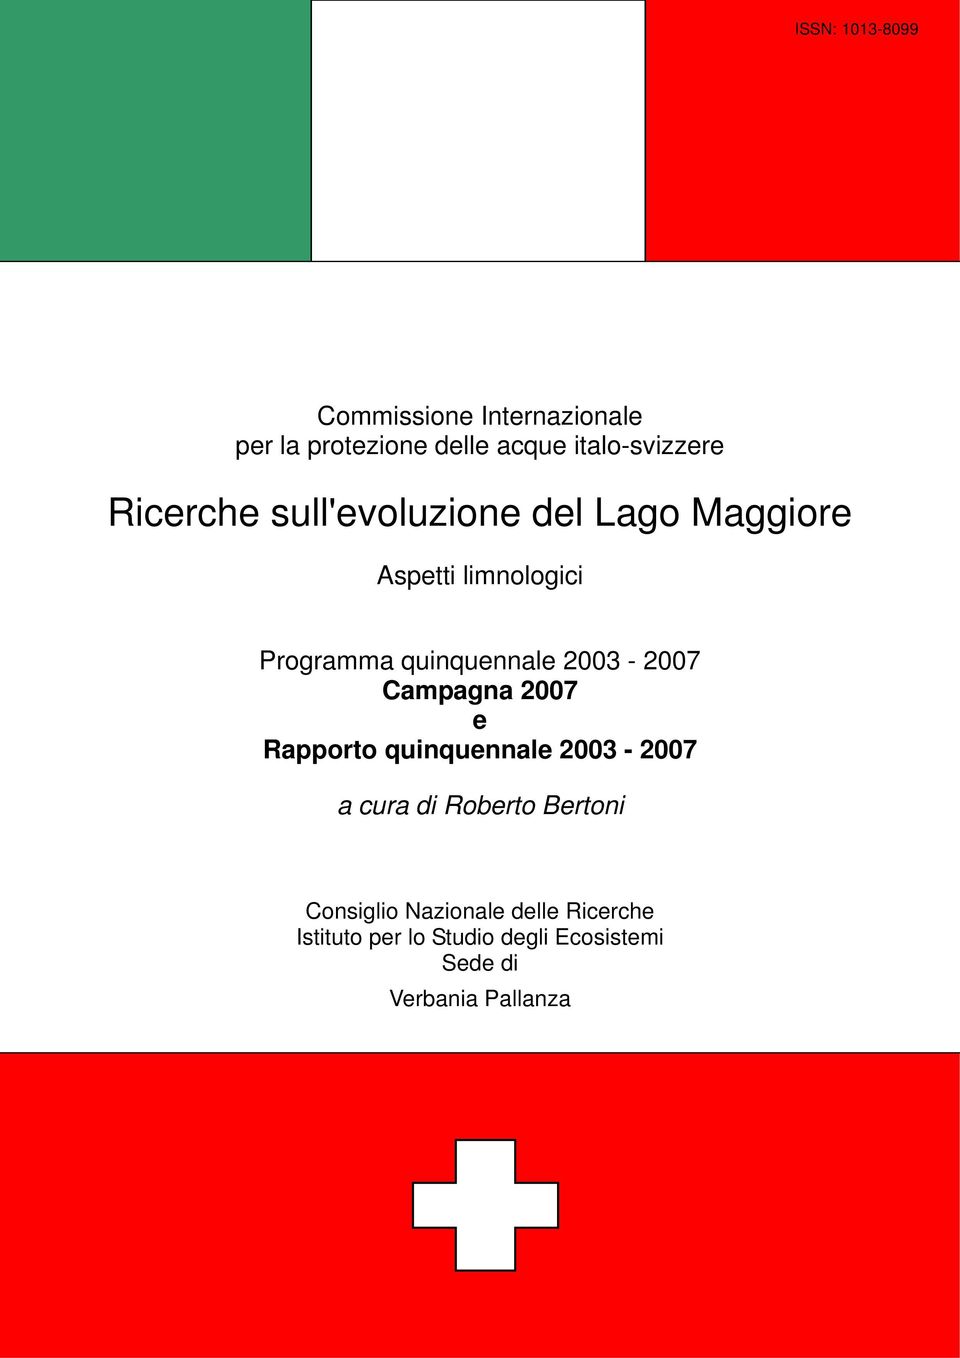 2003-2007 Campagna 2007 e Rapporto quinquennale 2003-2007 a cura di Roberto Bertoni